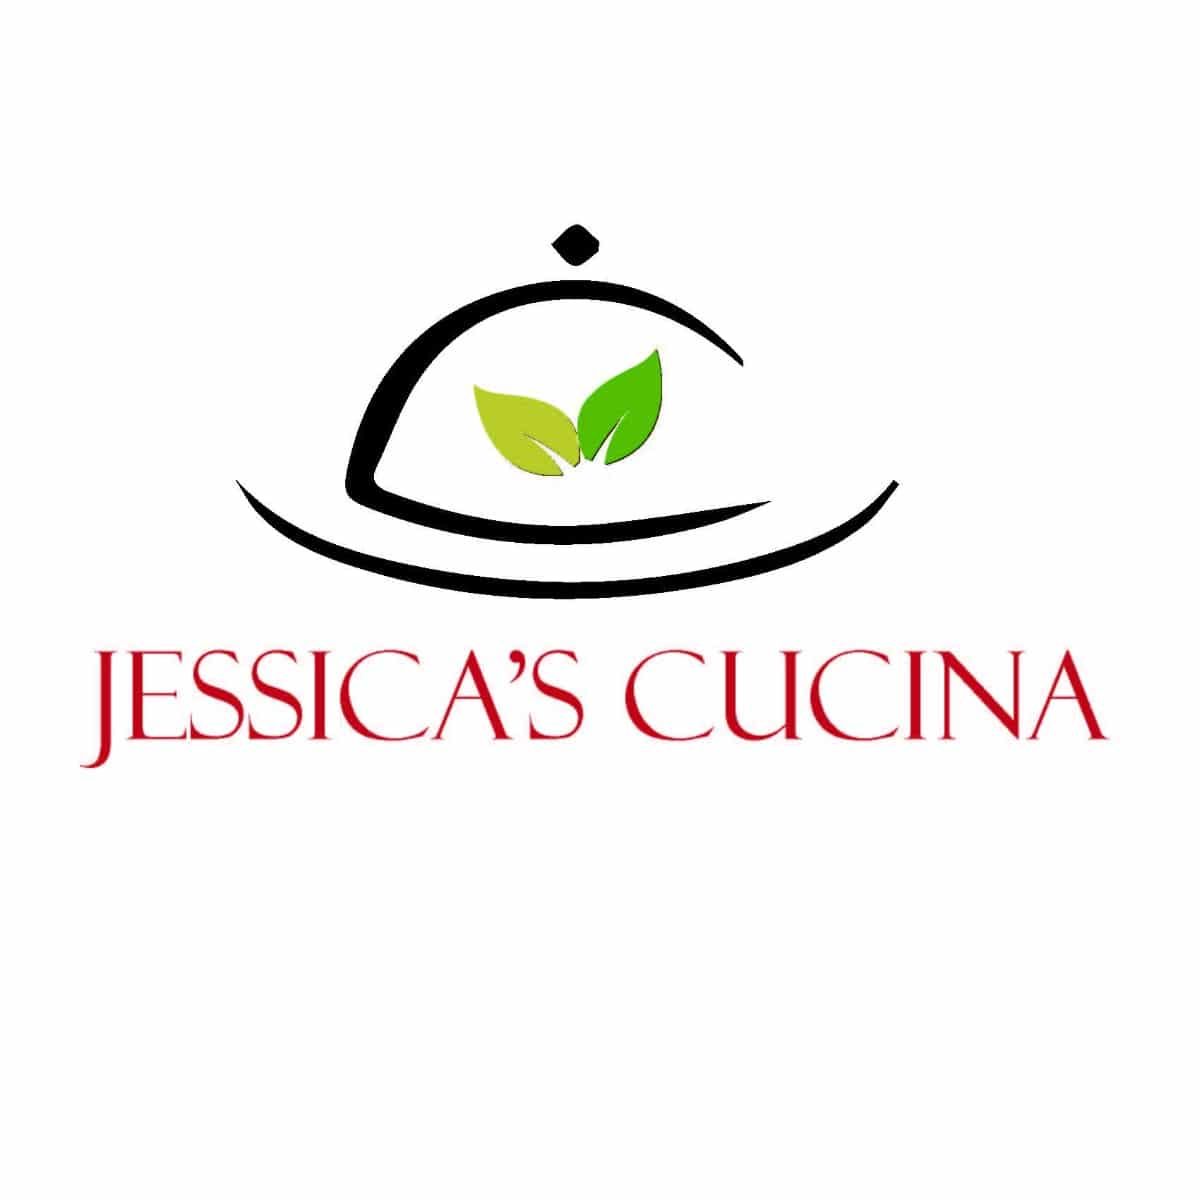 6737_Jessicas-Cucina-logo